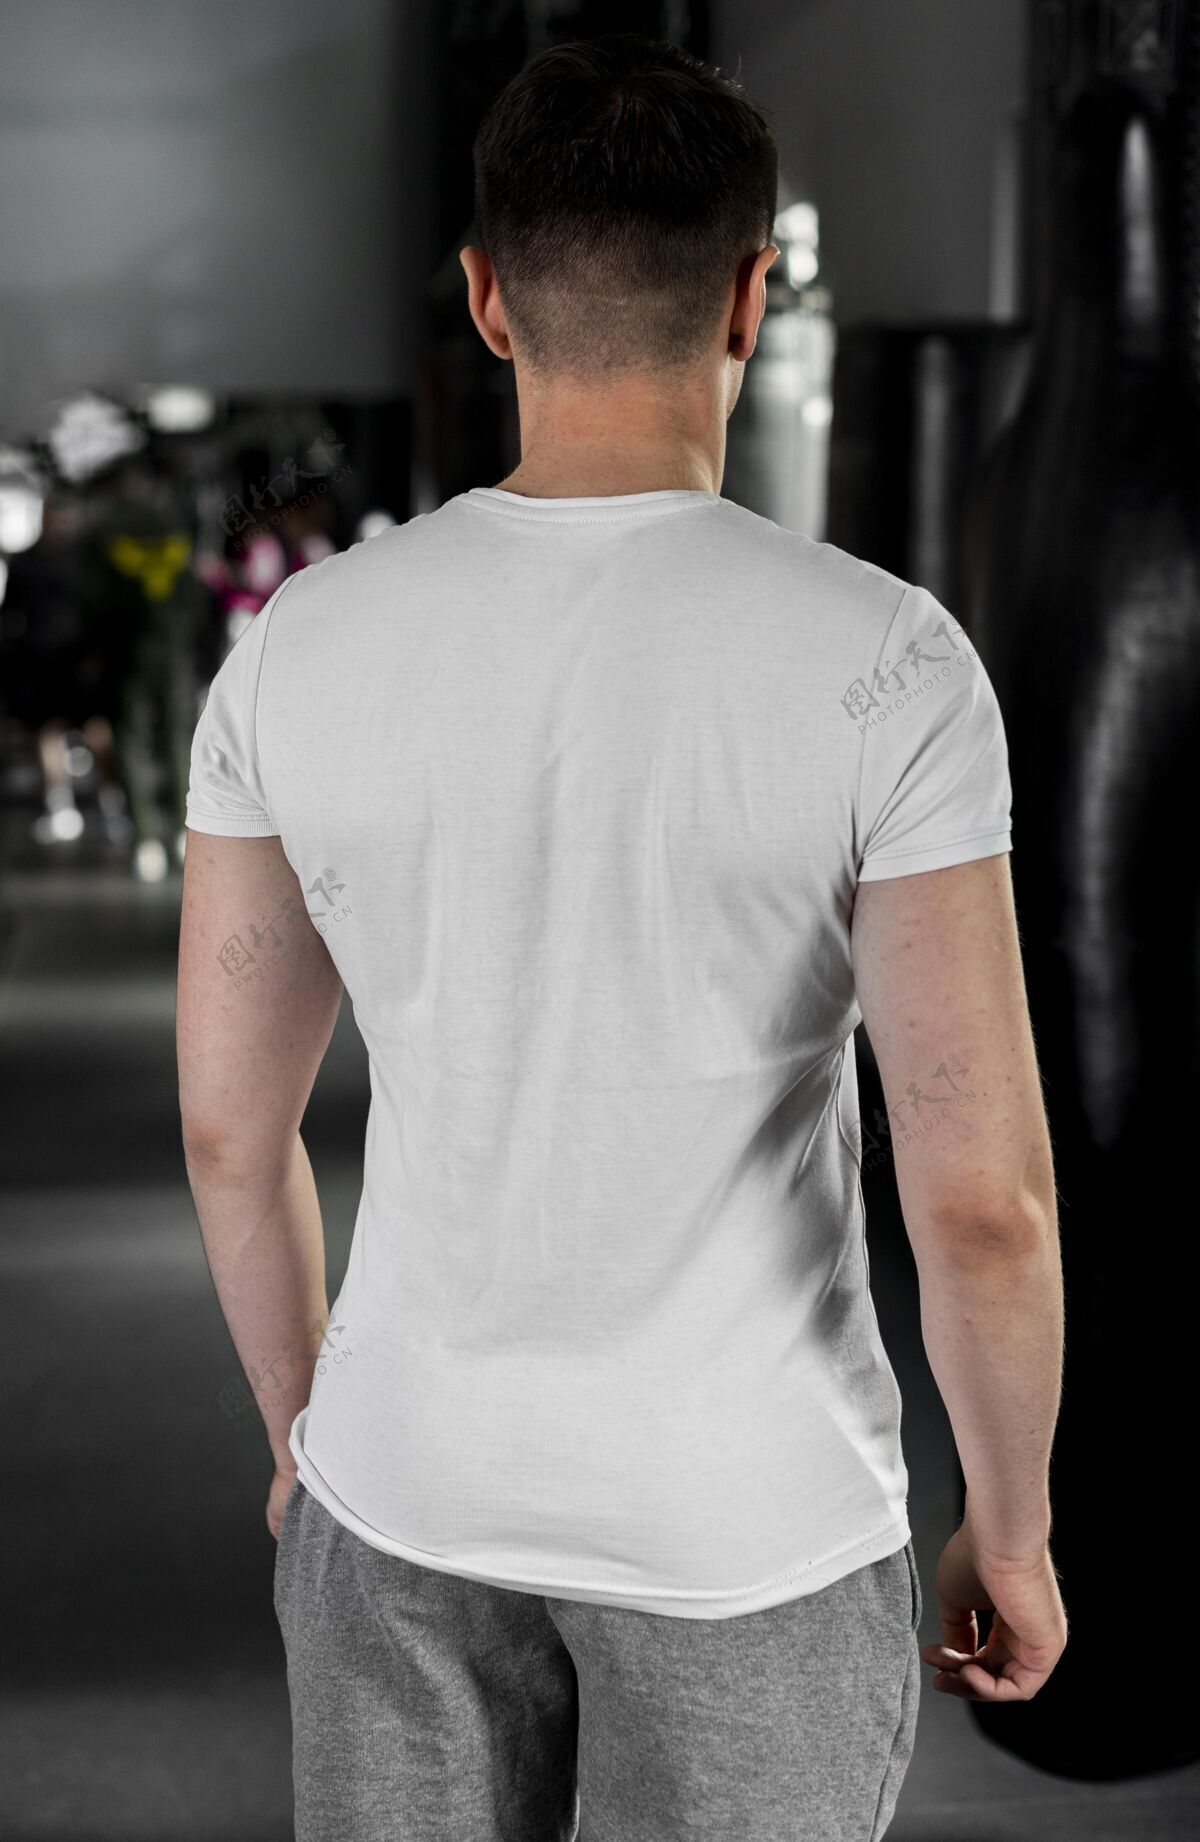 运动员穿拳击t恤的男击运动健康